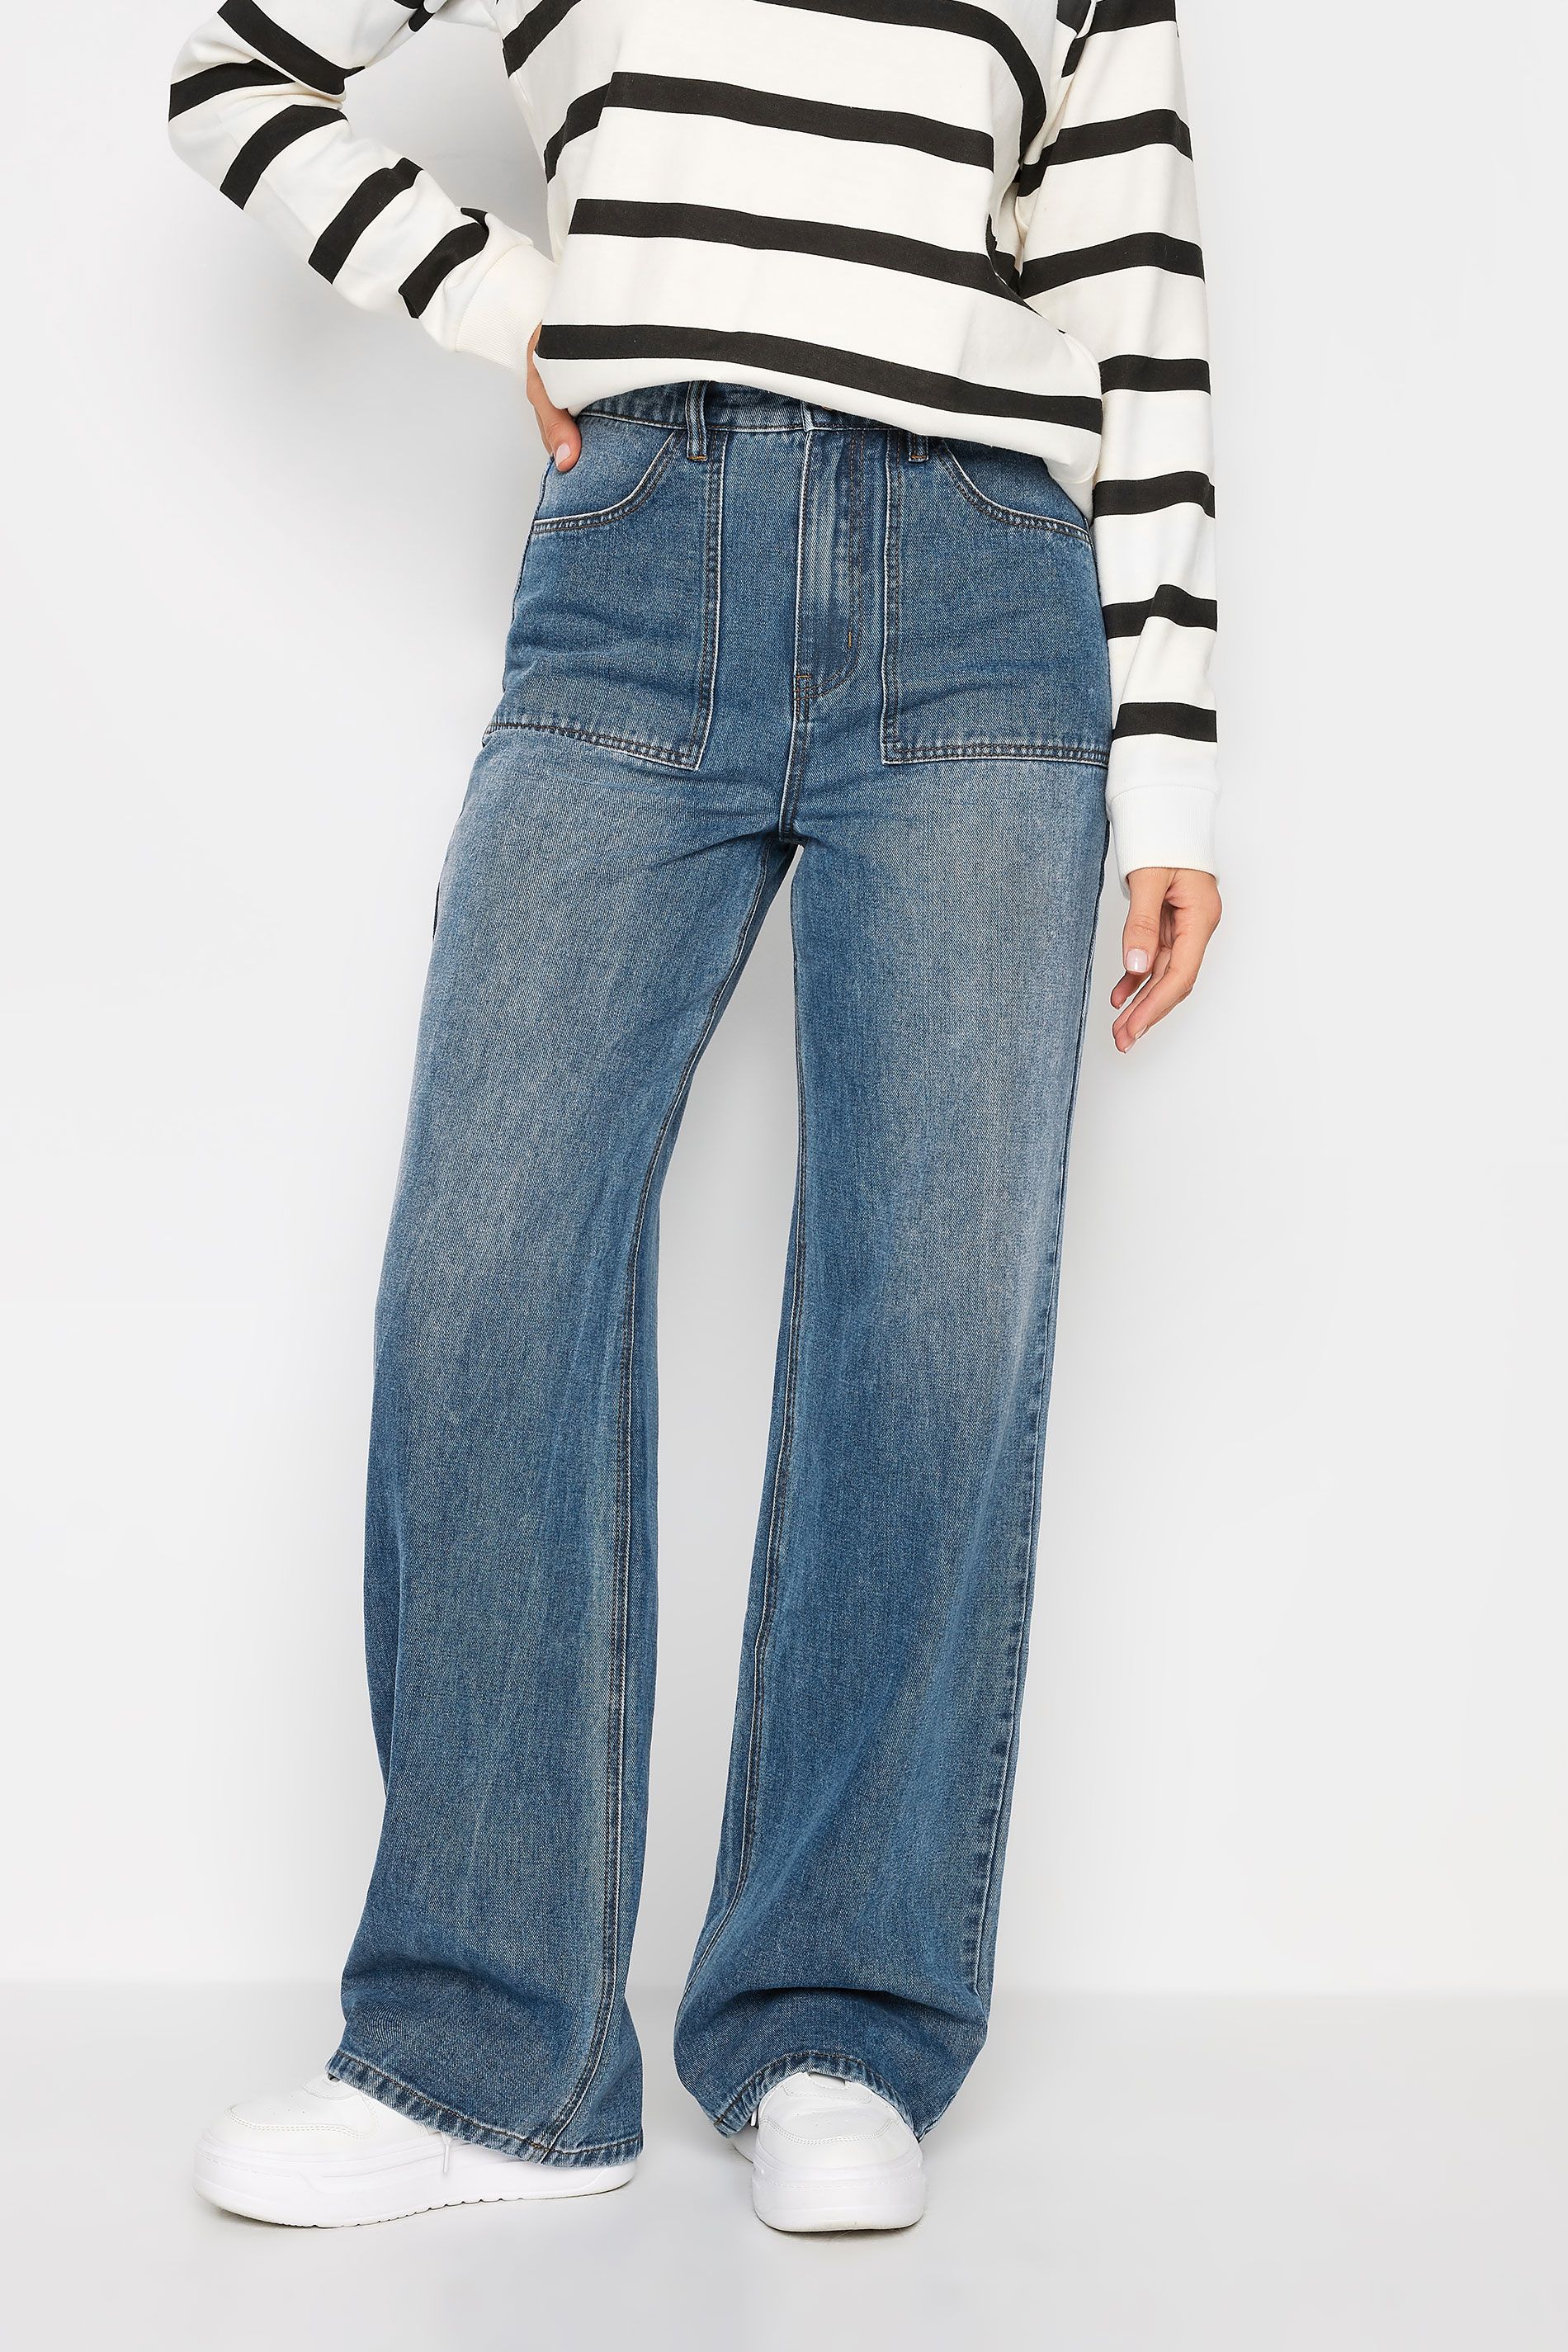 LTS Tall Blue Wide Leg High Waisted Jeans | Long Tall Sally